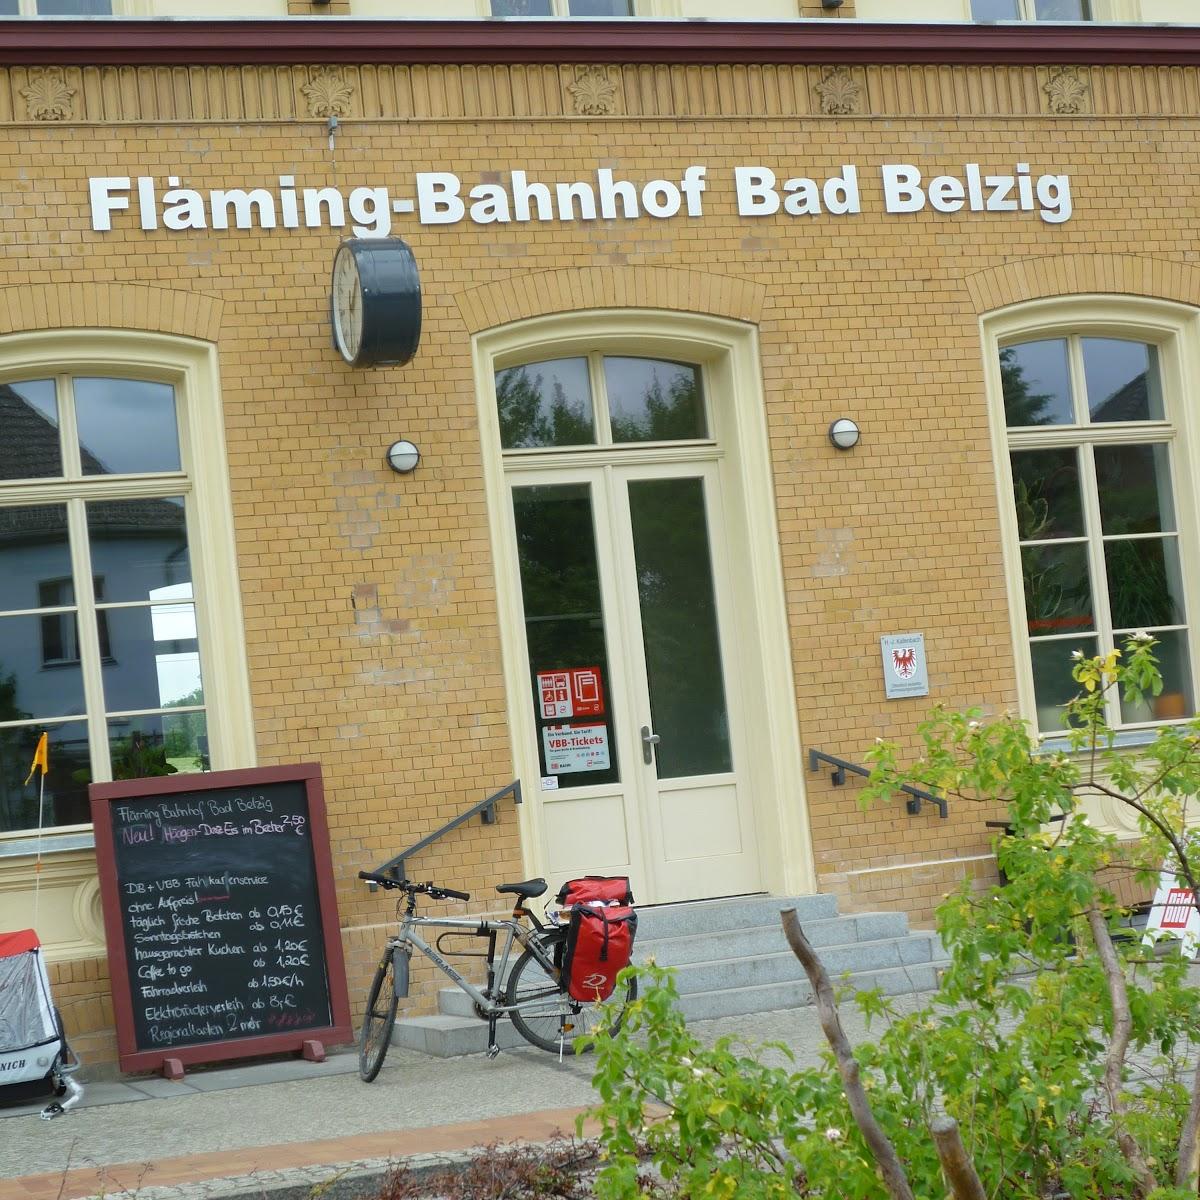 Restaurant "Fläming-Bahnhof" in Bad Belzig